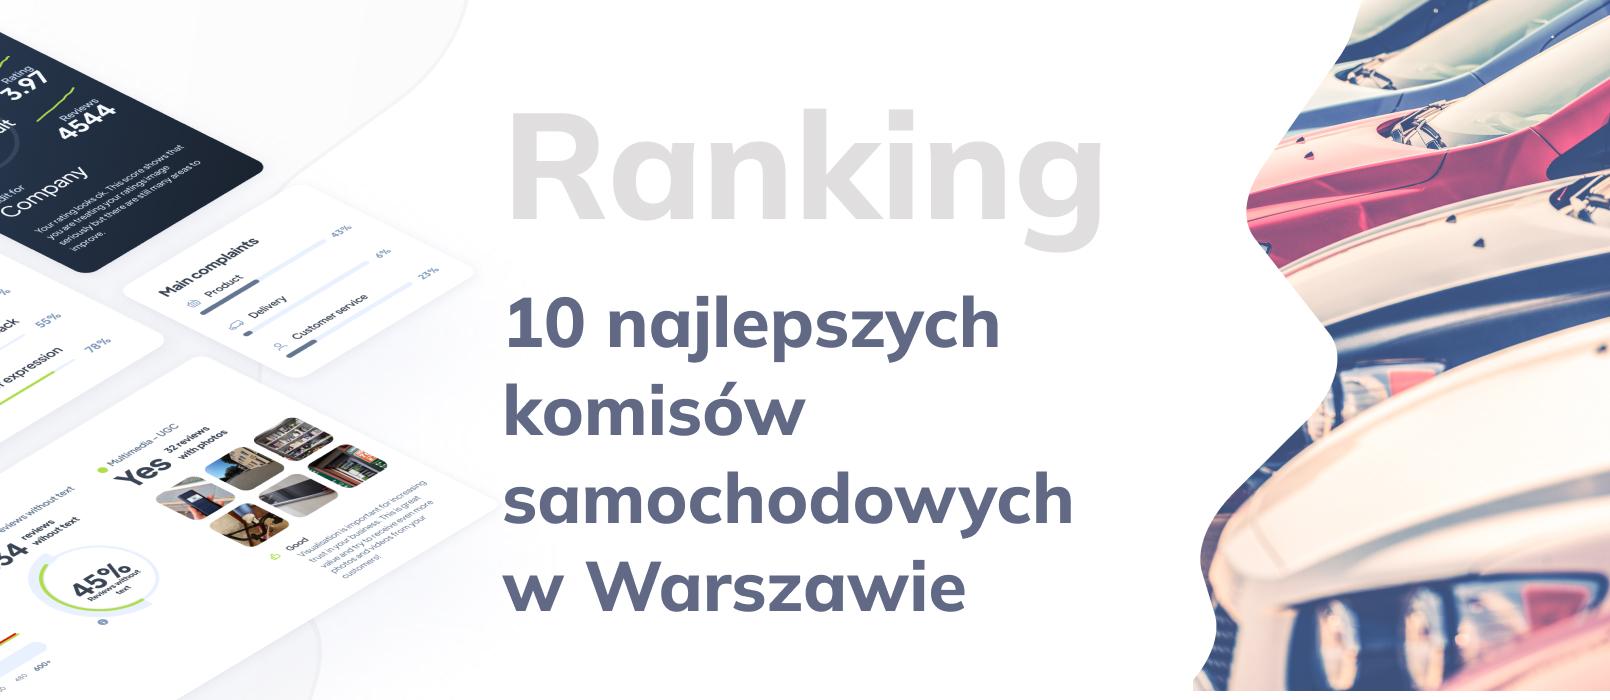 Komis samochodowy w Warszawie – TOP 10 Ranking najlepszych komisów z samochodami używanymi